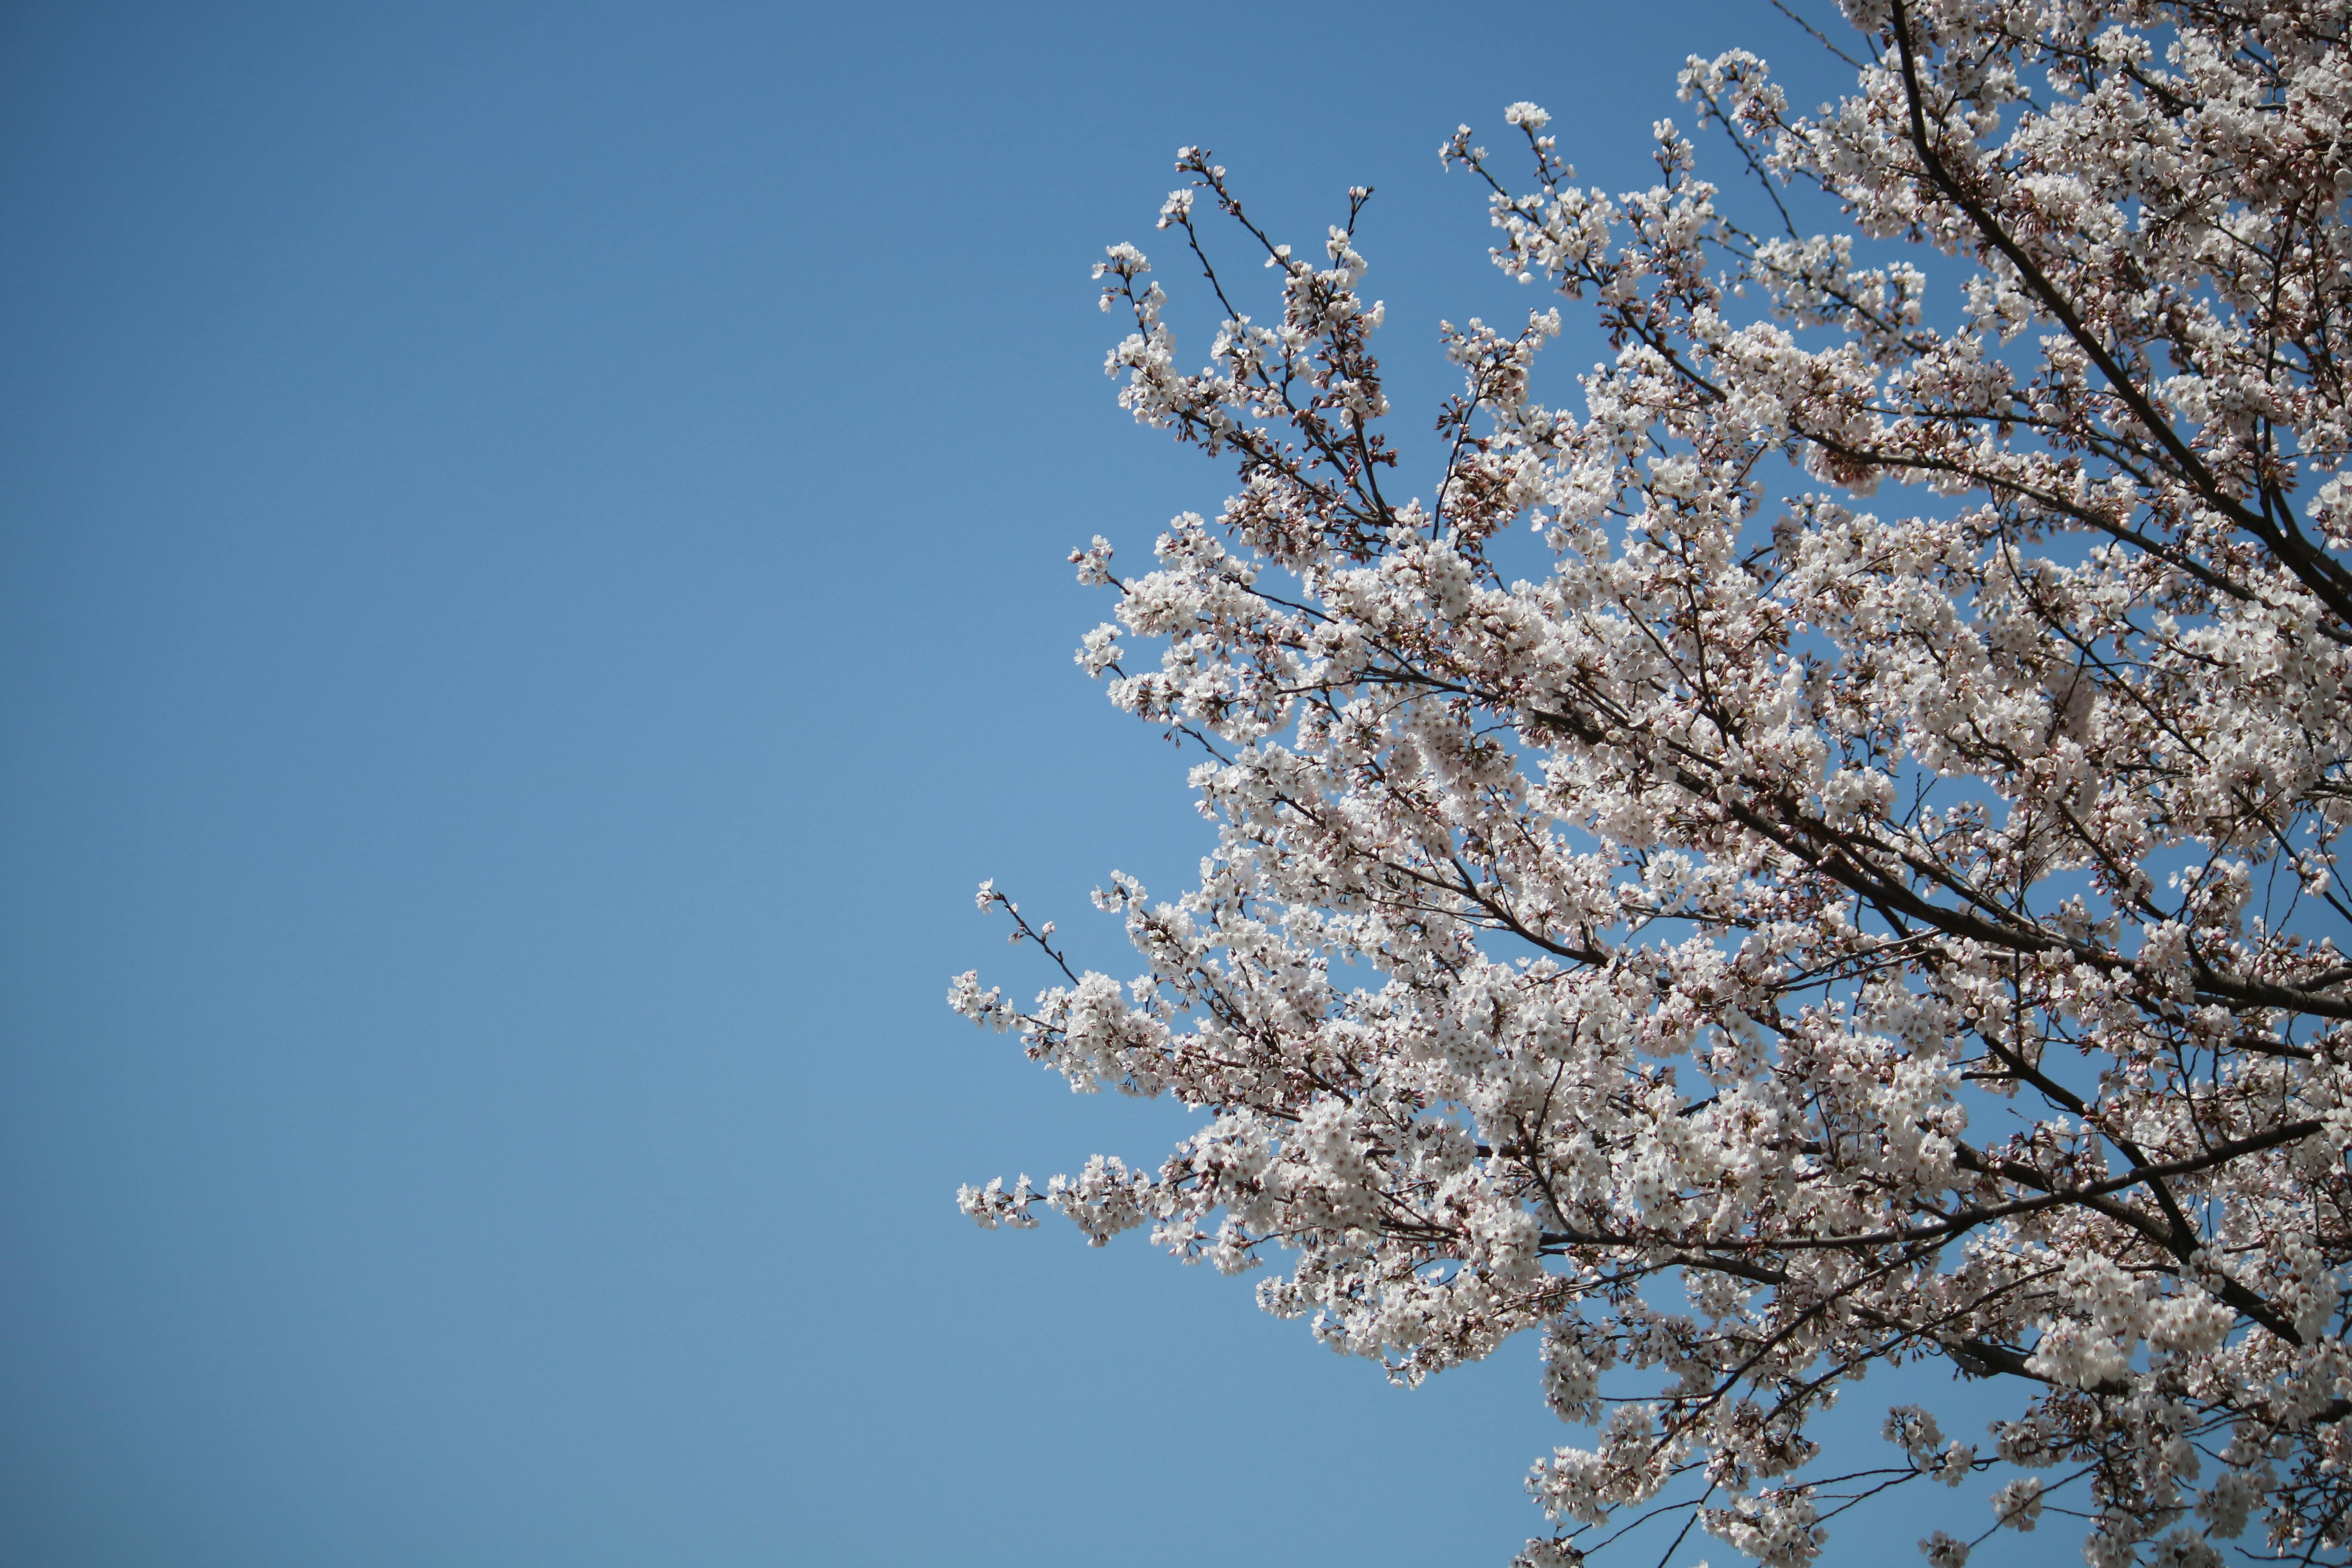 Bình yên và tuyệt đẹp - một bức ảnh hoa anh đào trắng trên nền trời xanh. Hãy tận hưởng không gian và cảm nhận vẻ đẹp dịu dàng trong hình ảnh miễn phí này, chứa đựng trong mình nhiều hoài niệm và kỷ niệm của mùa xuân.